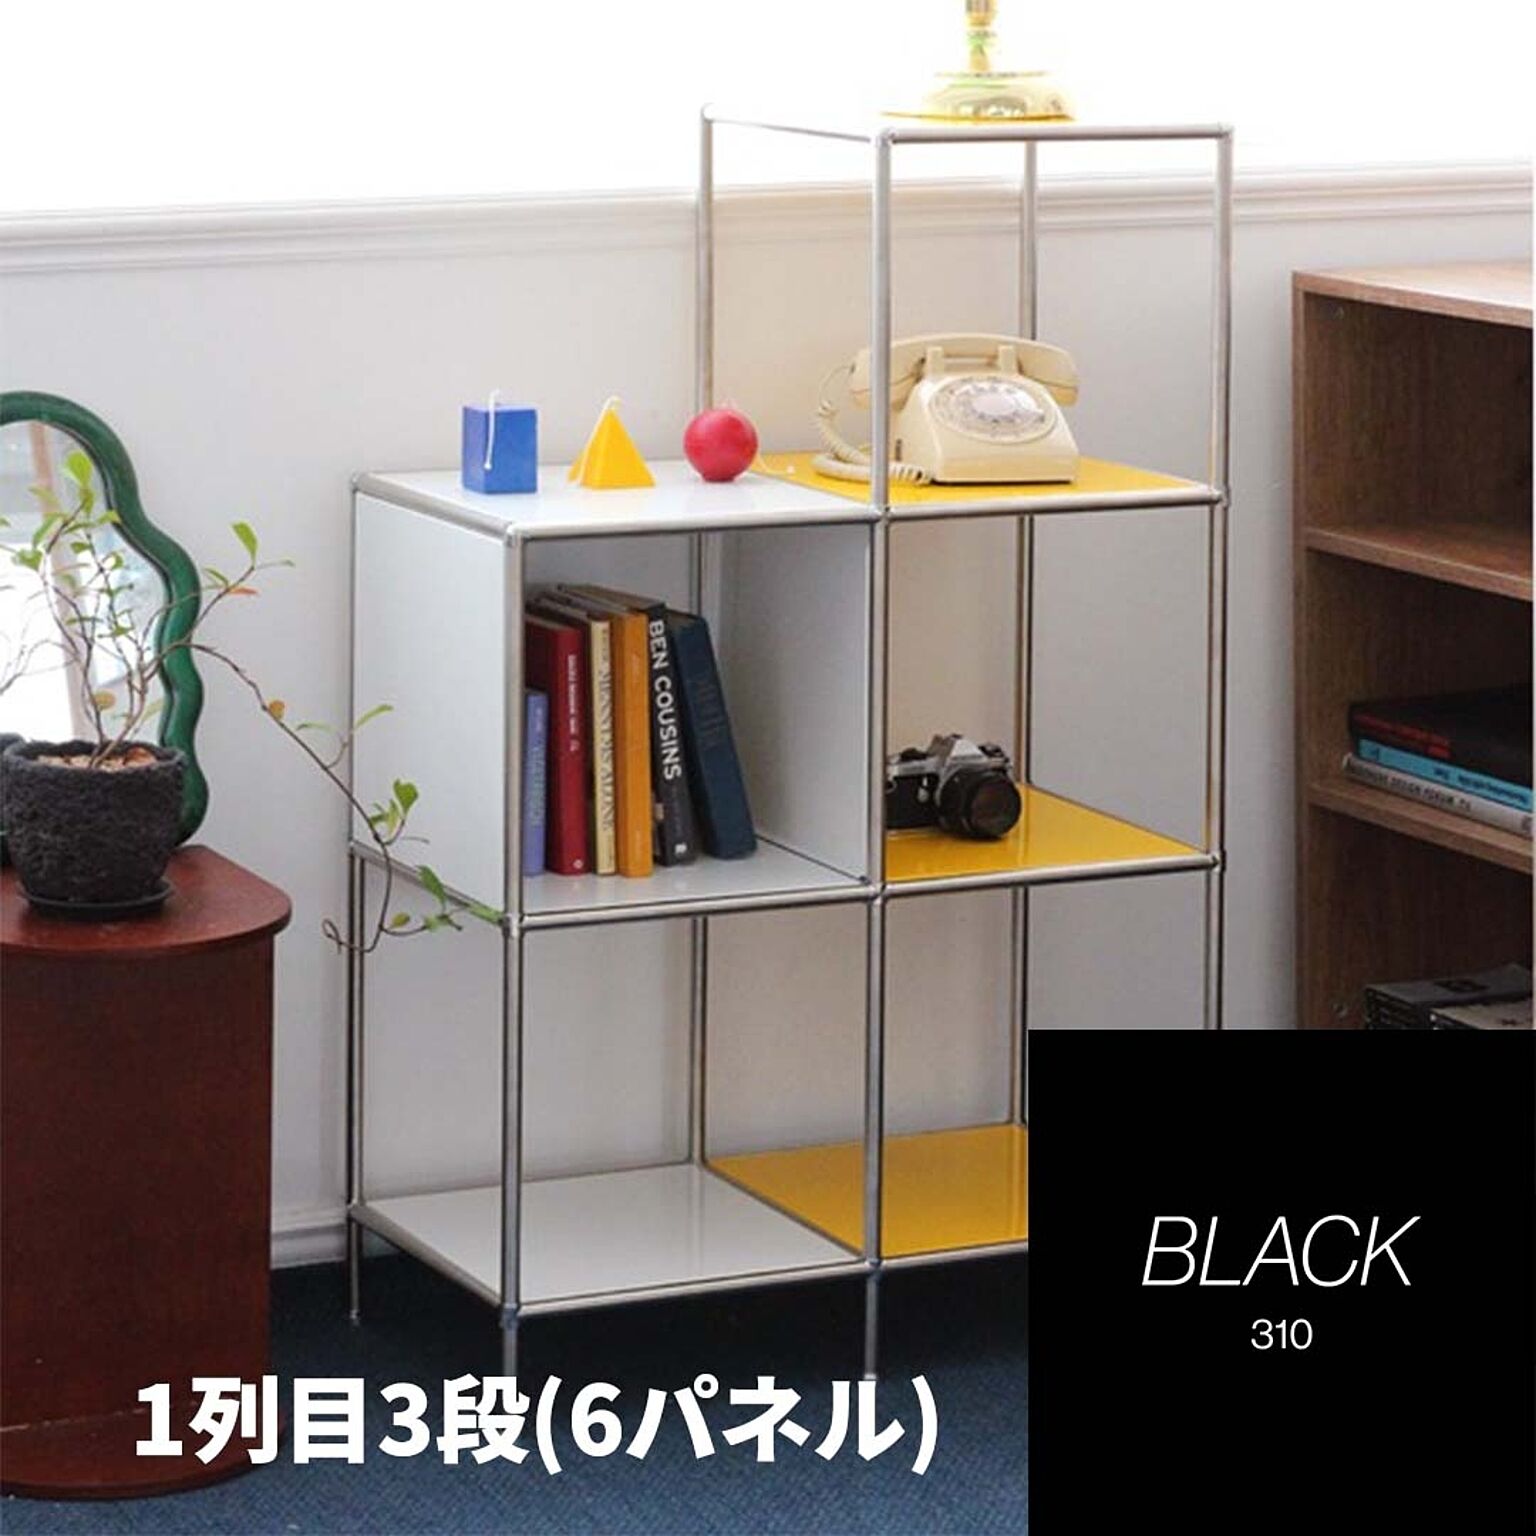 The Frigg モジュール家具 310 3+4x2 IP【Bauhaus Japan】ディスプレイラック/収納家具